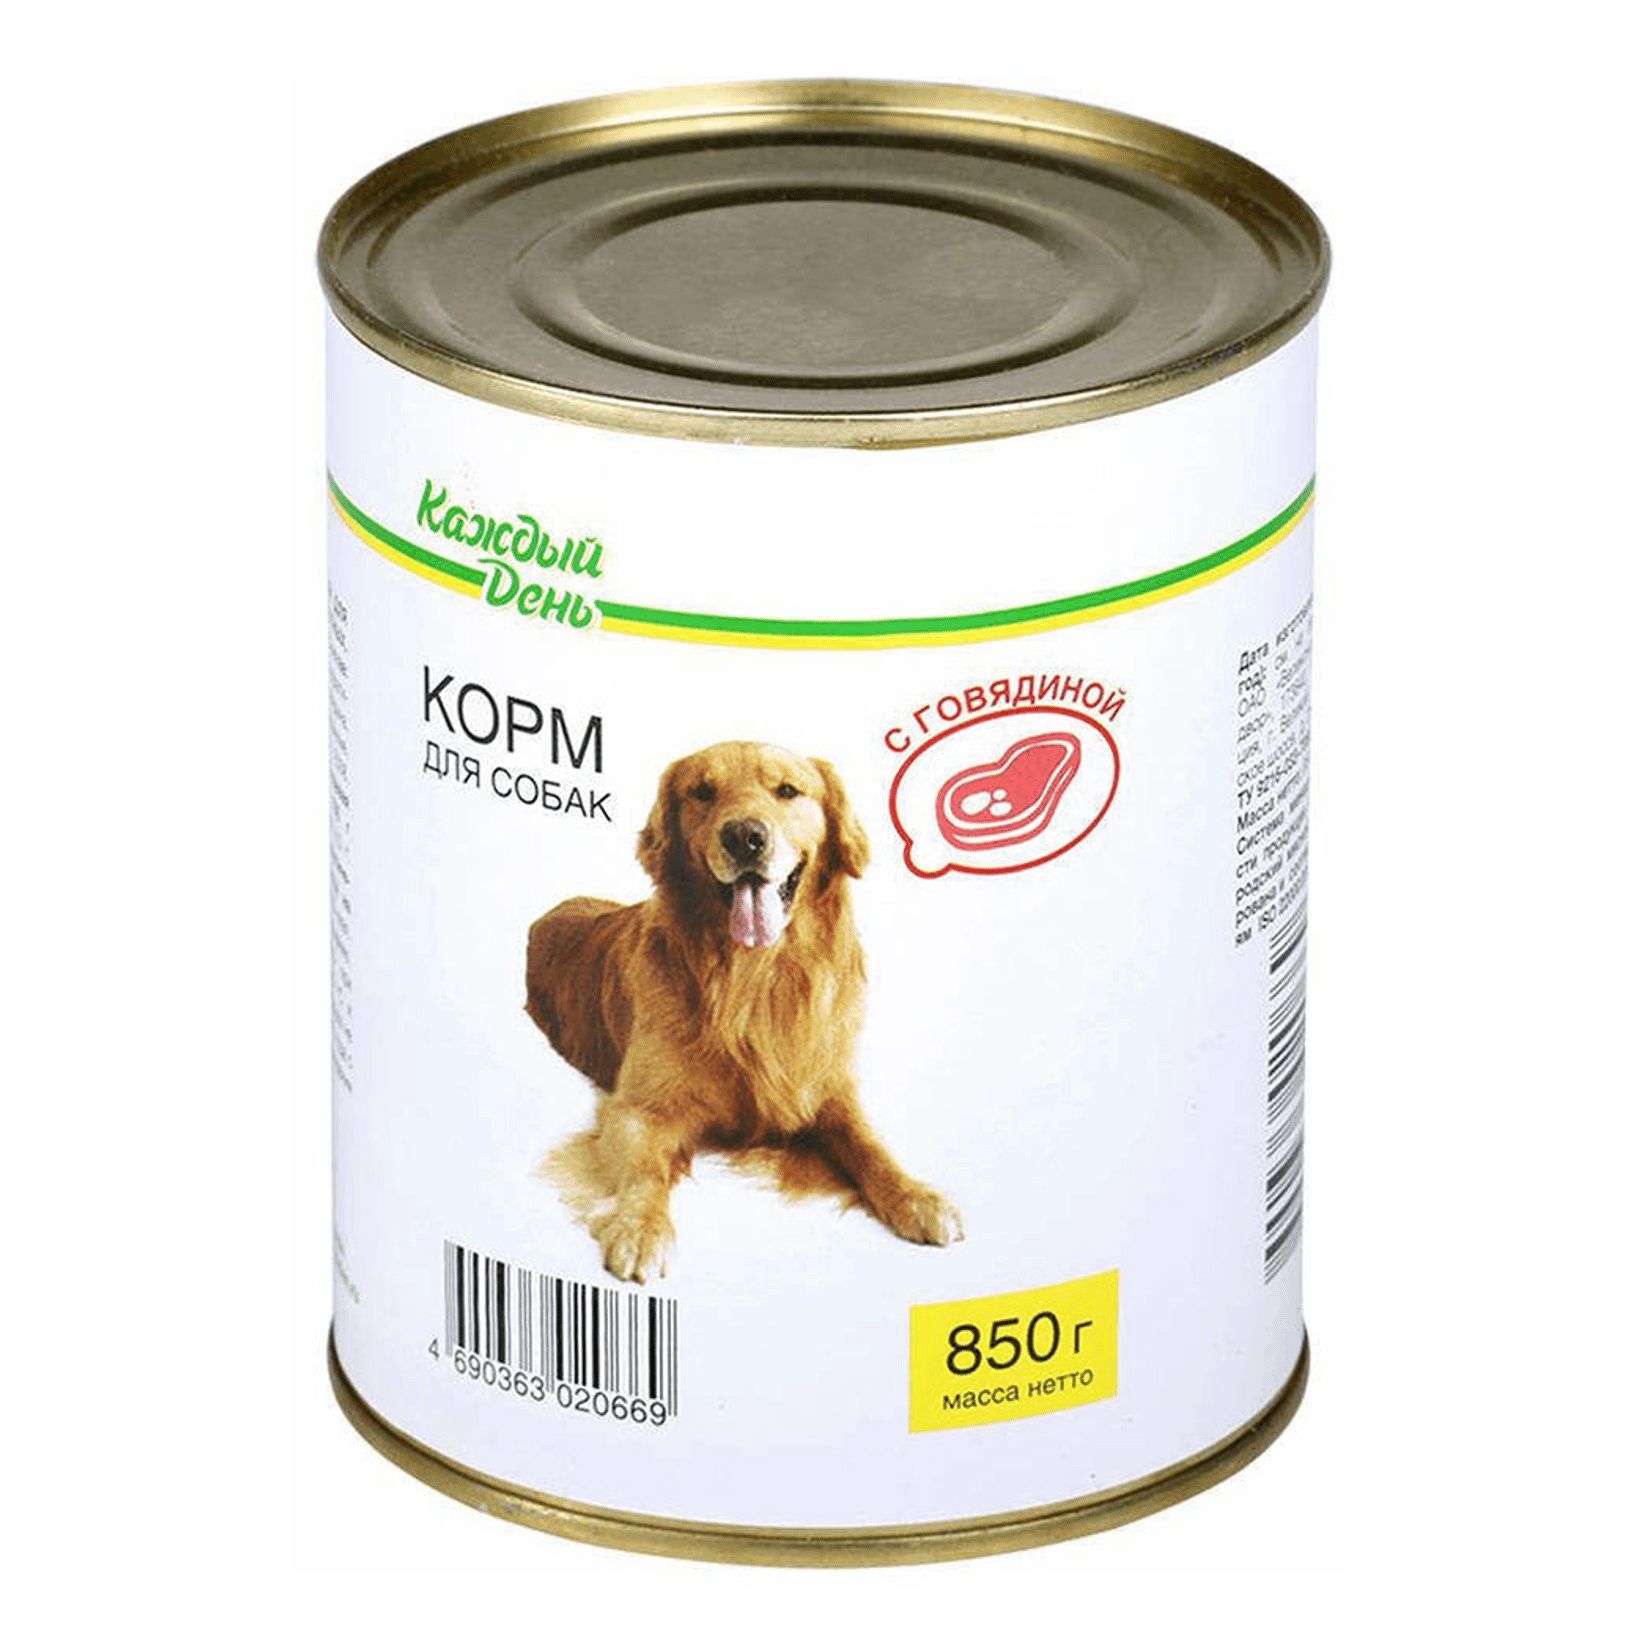 Корм для собак каждый день консервы для собак с говядиной (0.85 кг) 1 шт.. Корм для собак darsi (0.85 кг) 1 шт. Консервы для собак: говядина и рис. Корм для собак Rocky (0.25 кг) 1 шт. Паштет с говядиной для собак. Корм для собак Aras (0.82 кг) 1 шт. Premium select для собак - говядина с овощами и рисом. Корм для собак консервы купить